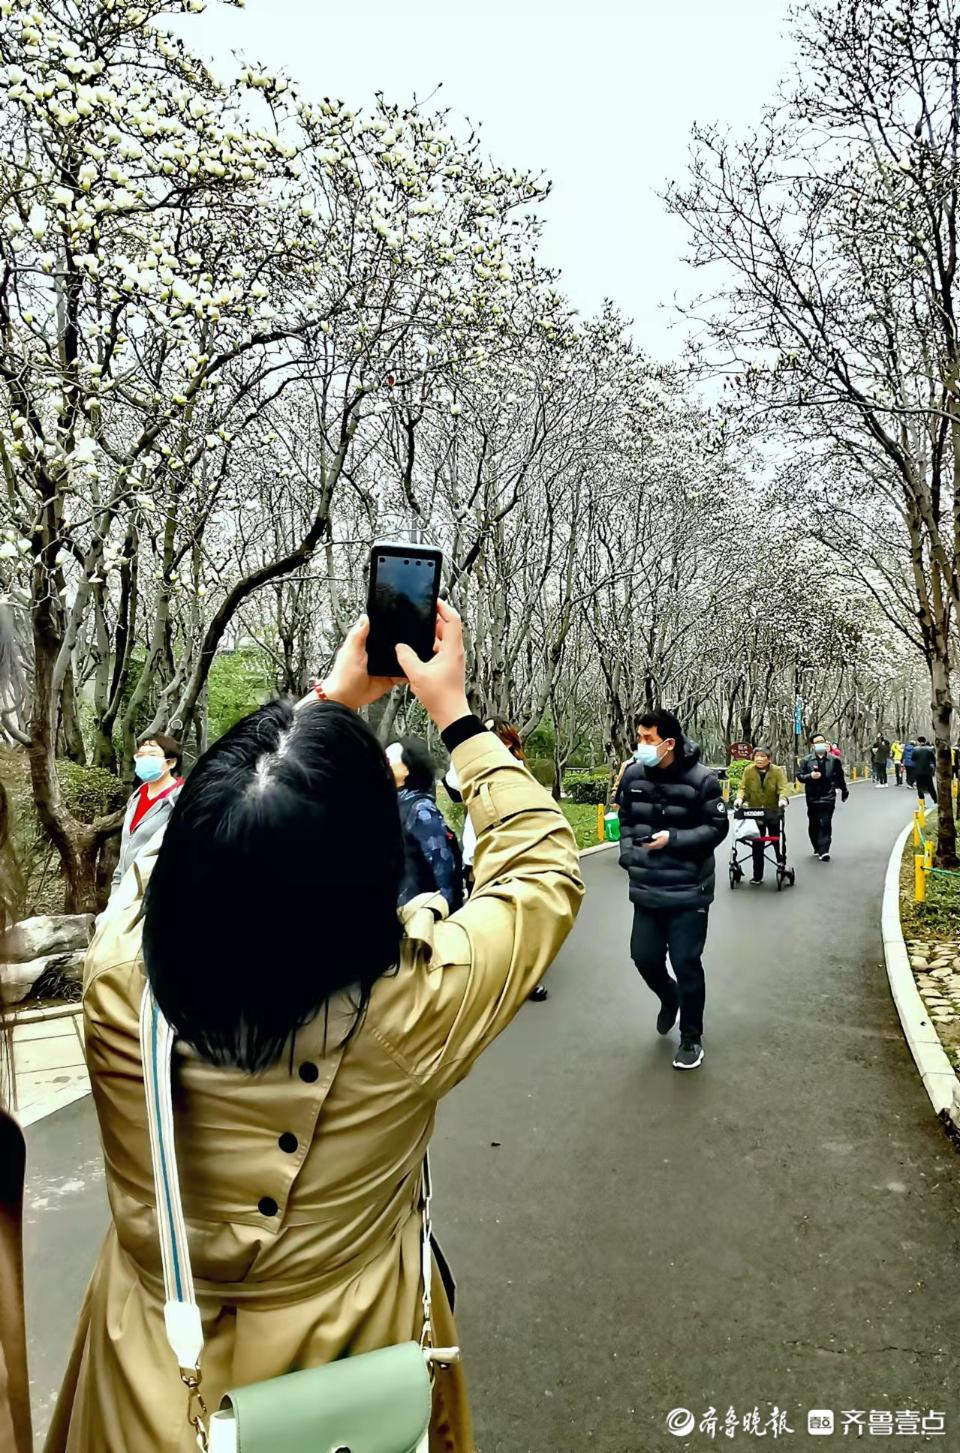 手机相机齐上阵 百花公园拍花人